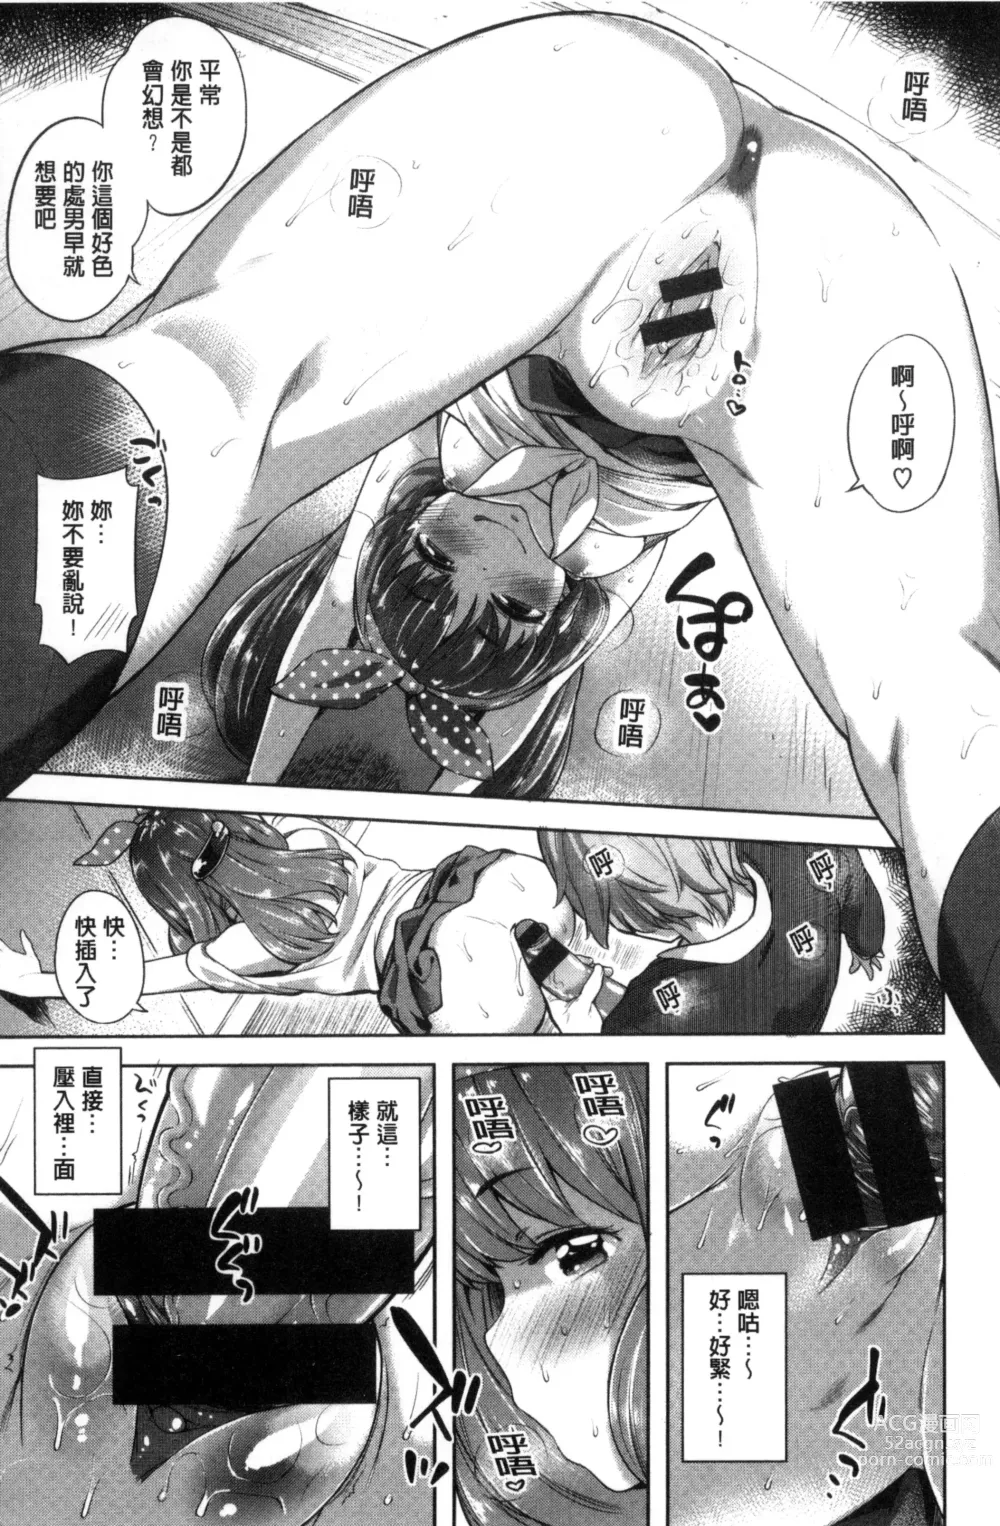 Page 21 of manga Zettai Muteki Shoujo - Cant beat me at sex!!